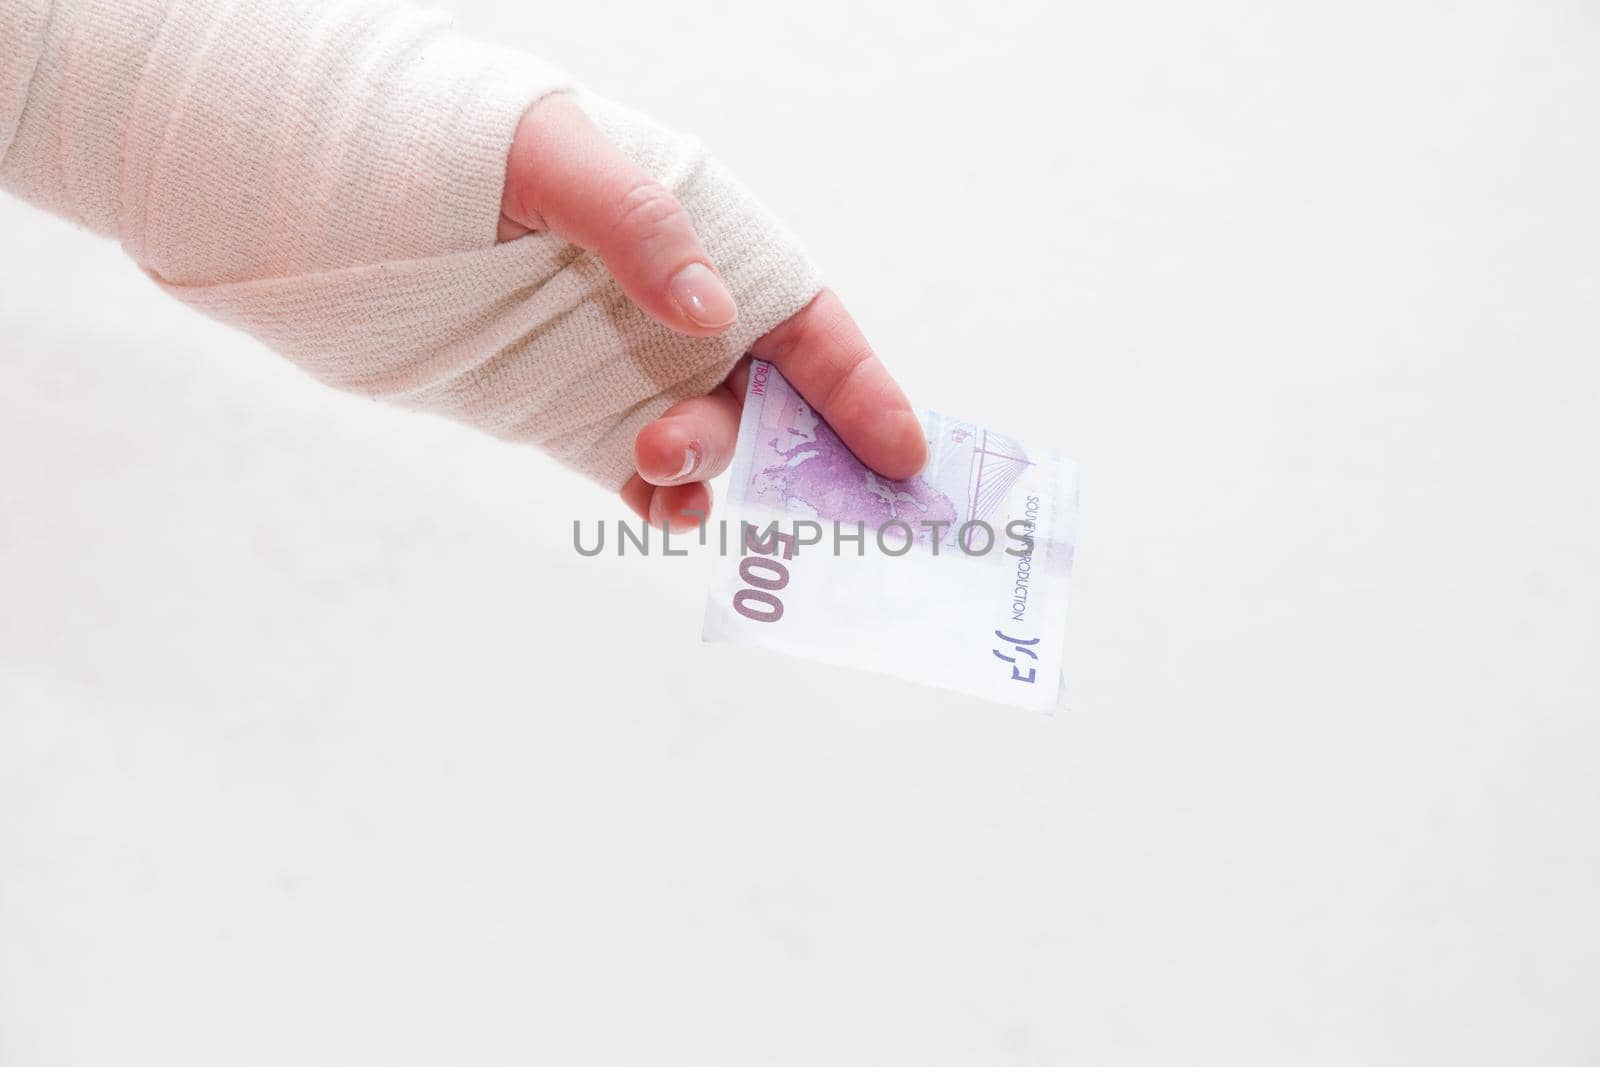 bandaged female hand holds a 500 euro bill by natashko